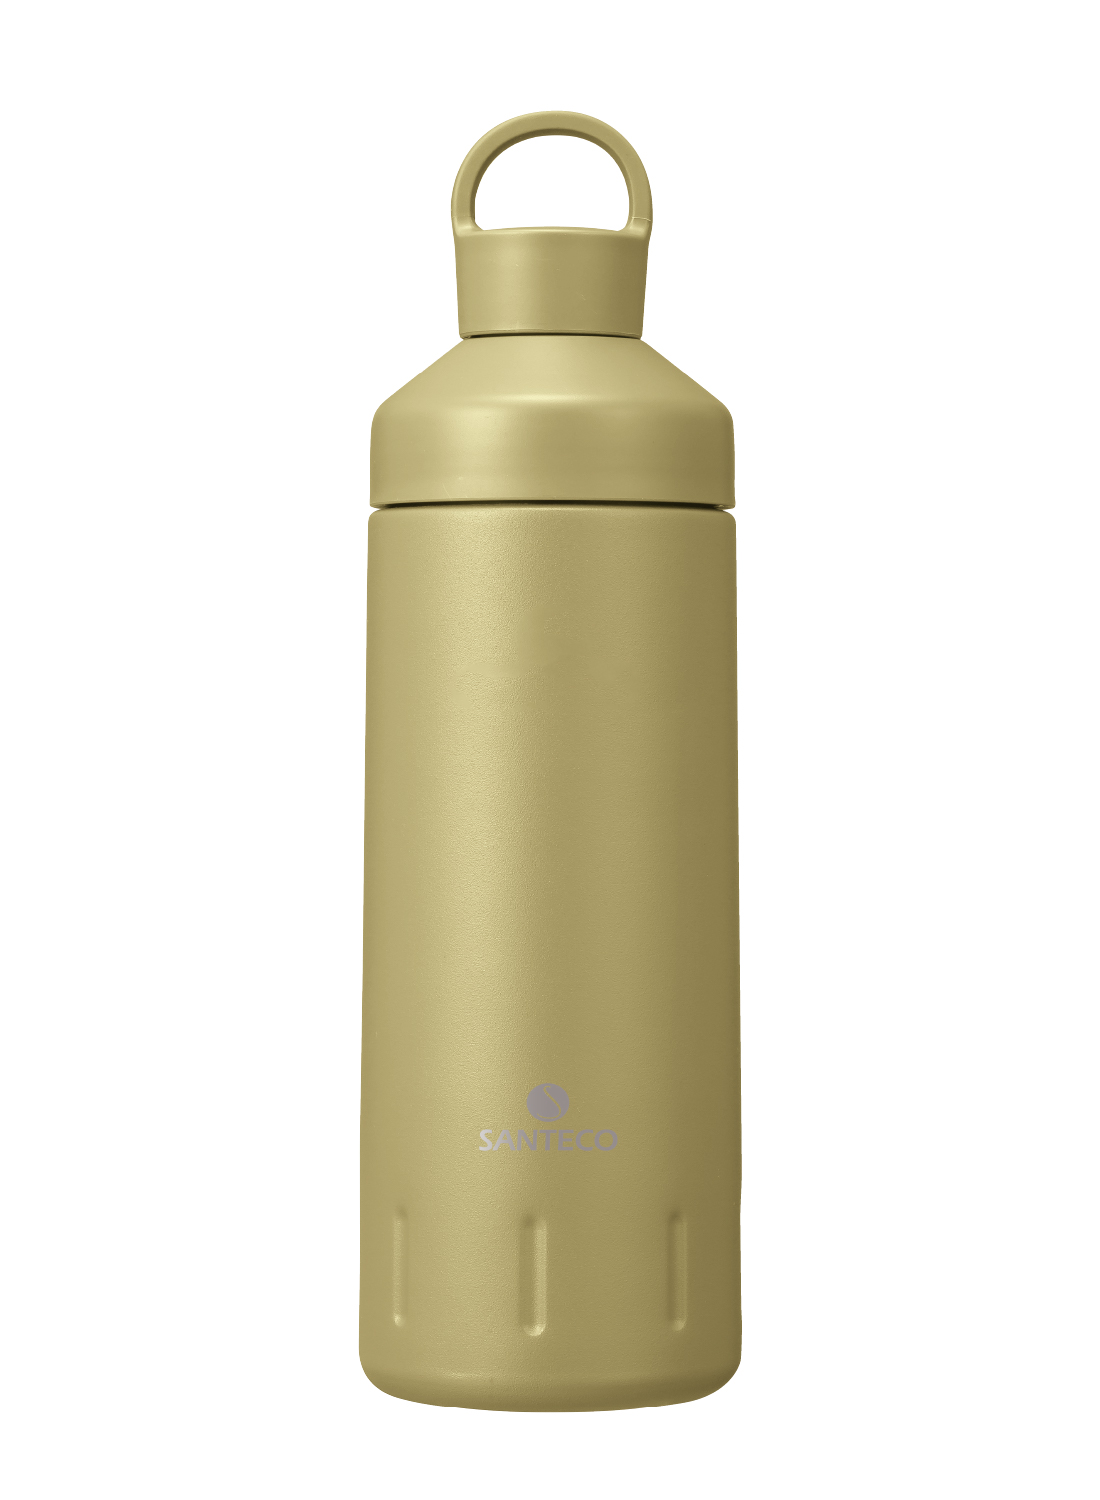 オーシャンビバレッジボトル ステンレス 590抗菌 - 株式会社シービー